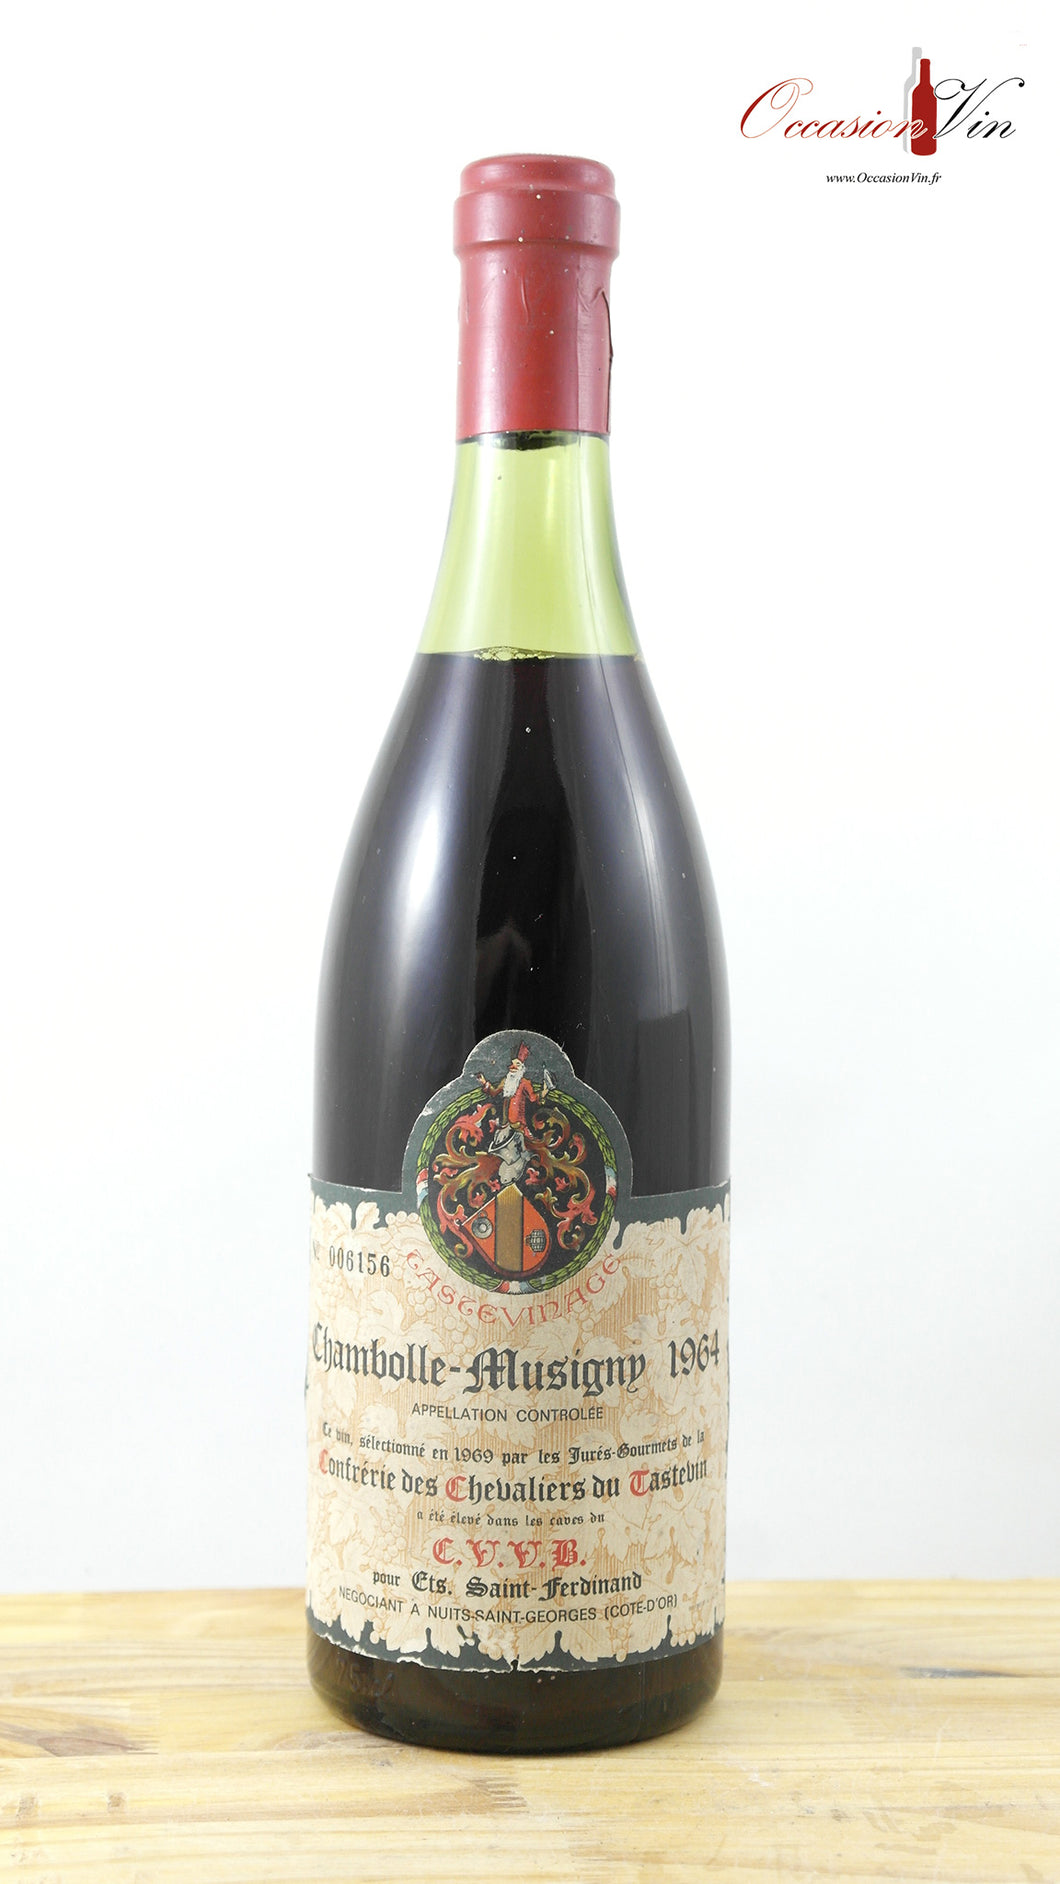 Chambolle-Musigny CVVB Vin 1964